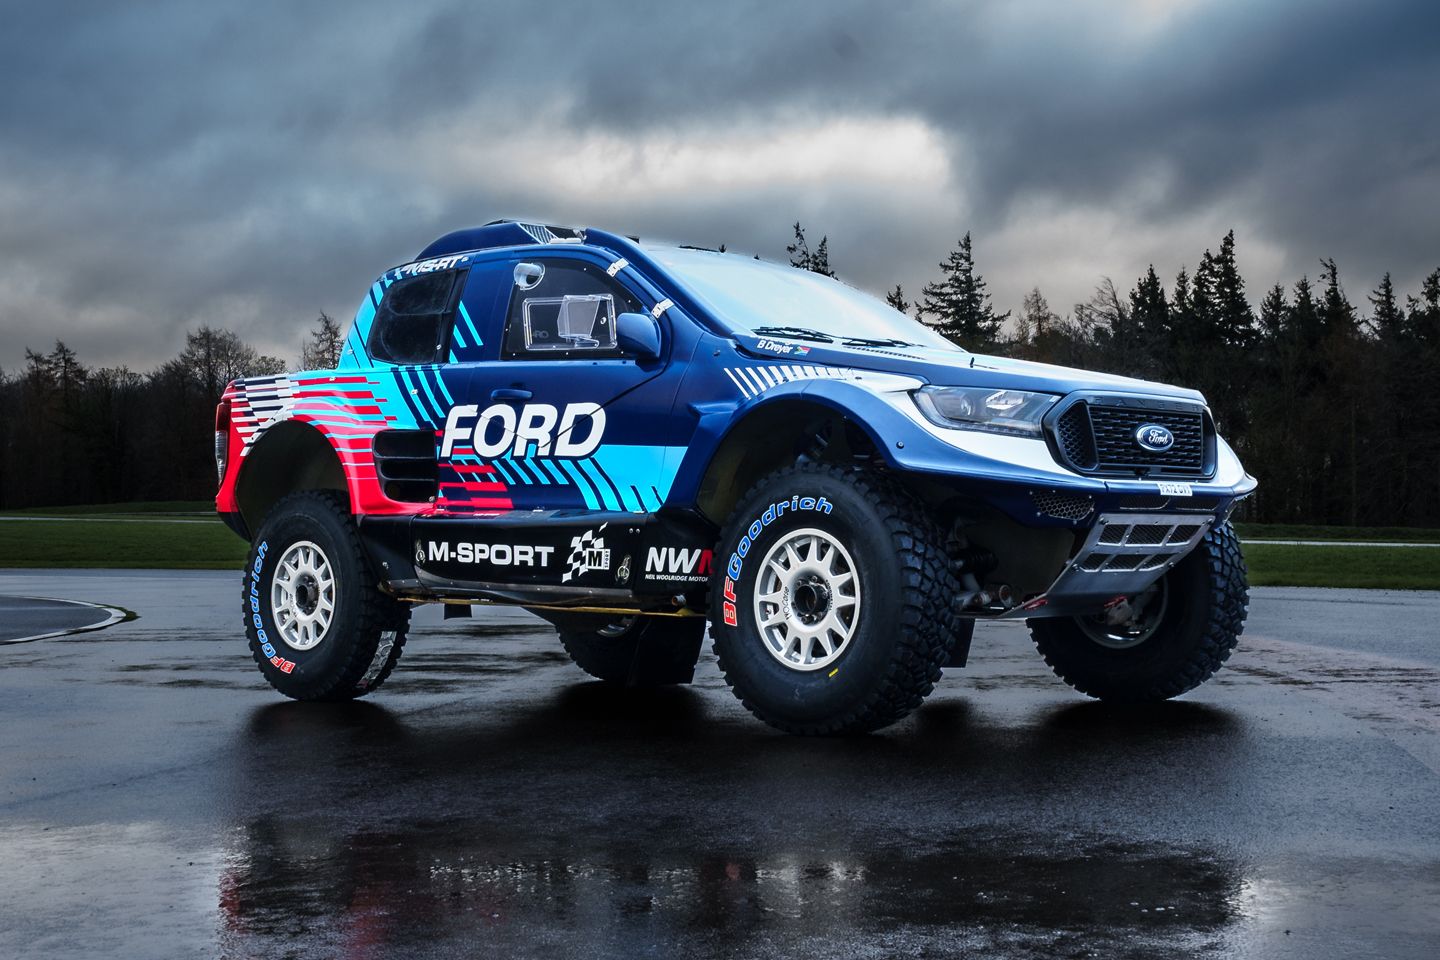 Behold the Ford M-Sport Ranger in Dakar livery - PistonHeads UK